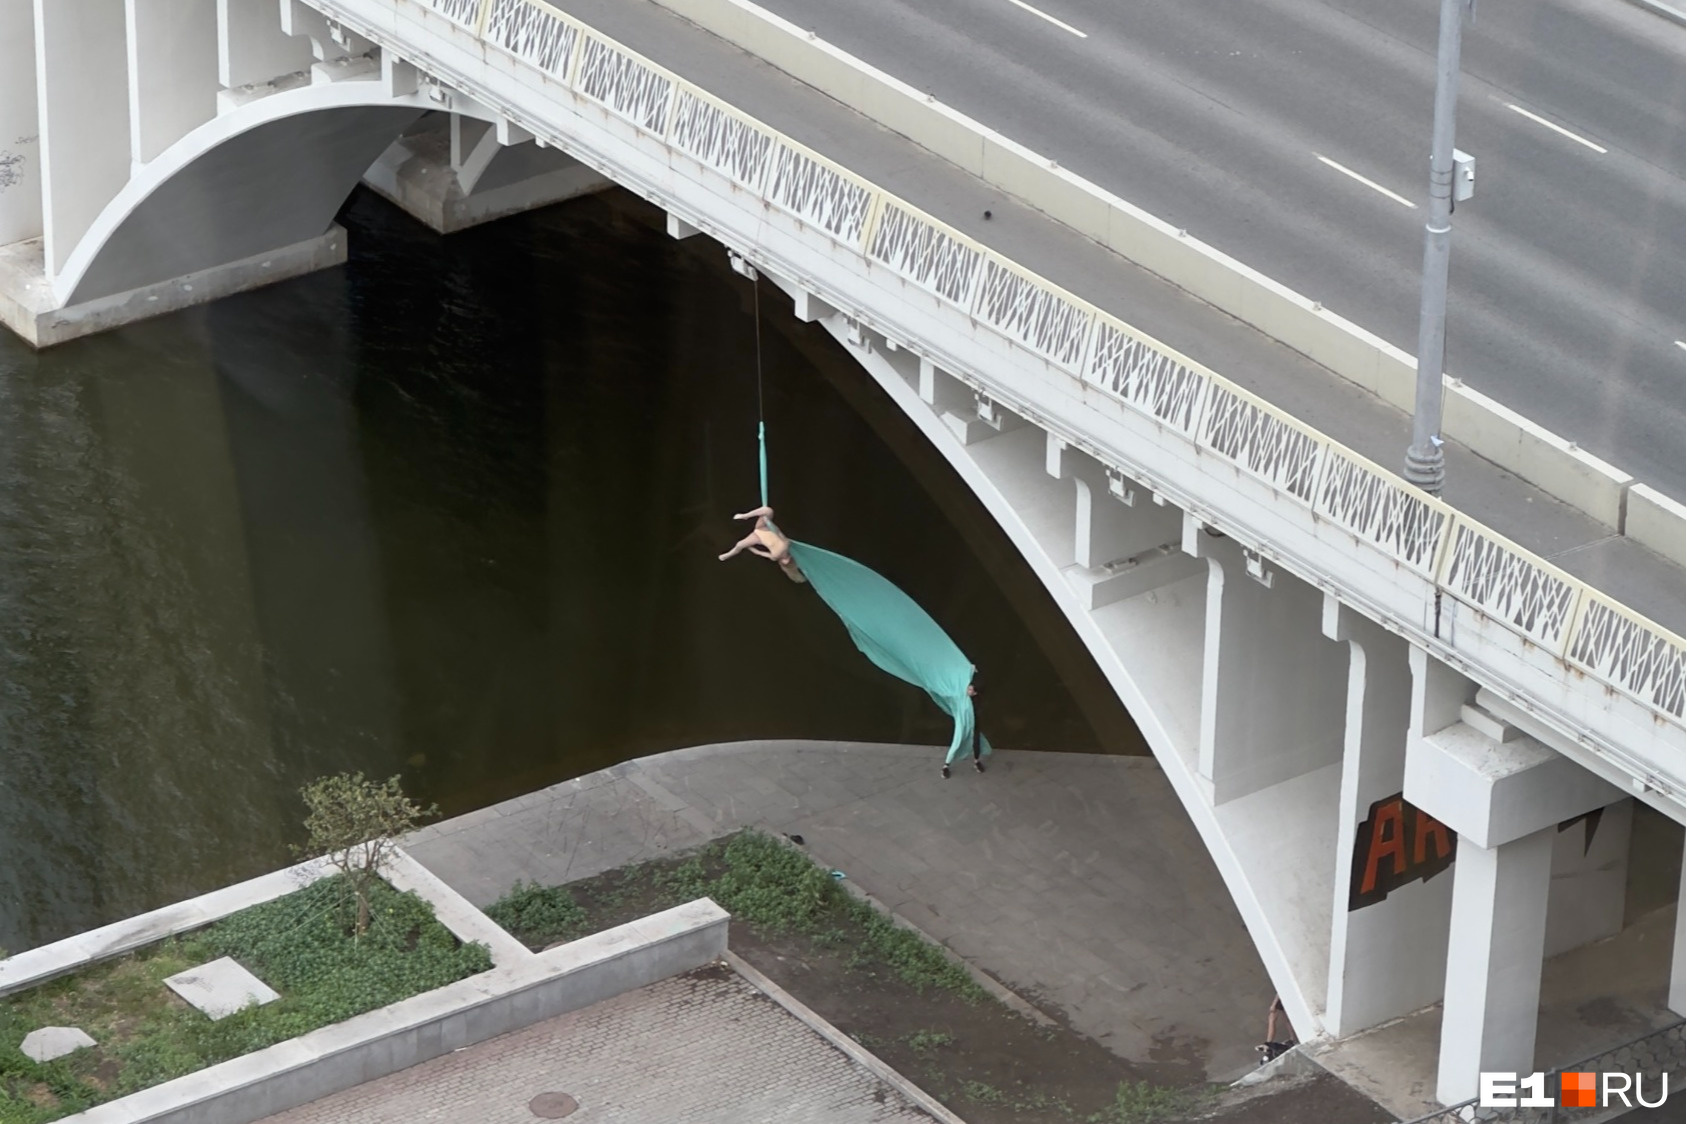 Летала под мостом! В Екатеринбурге ранним утром красотка устроила эффектную фотосессию на полотнах